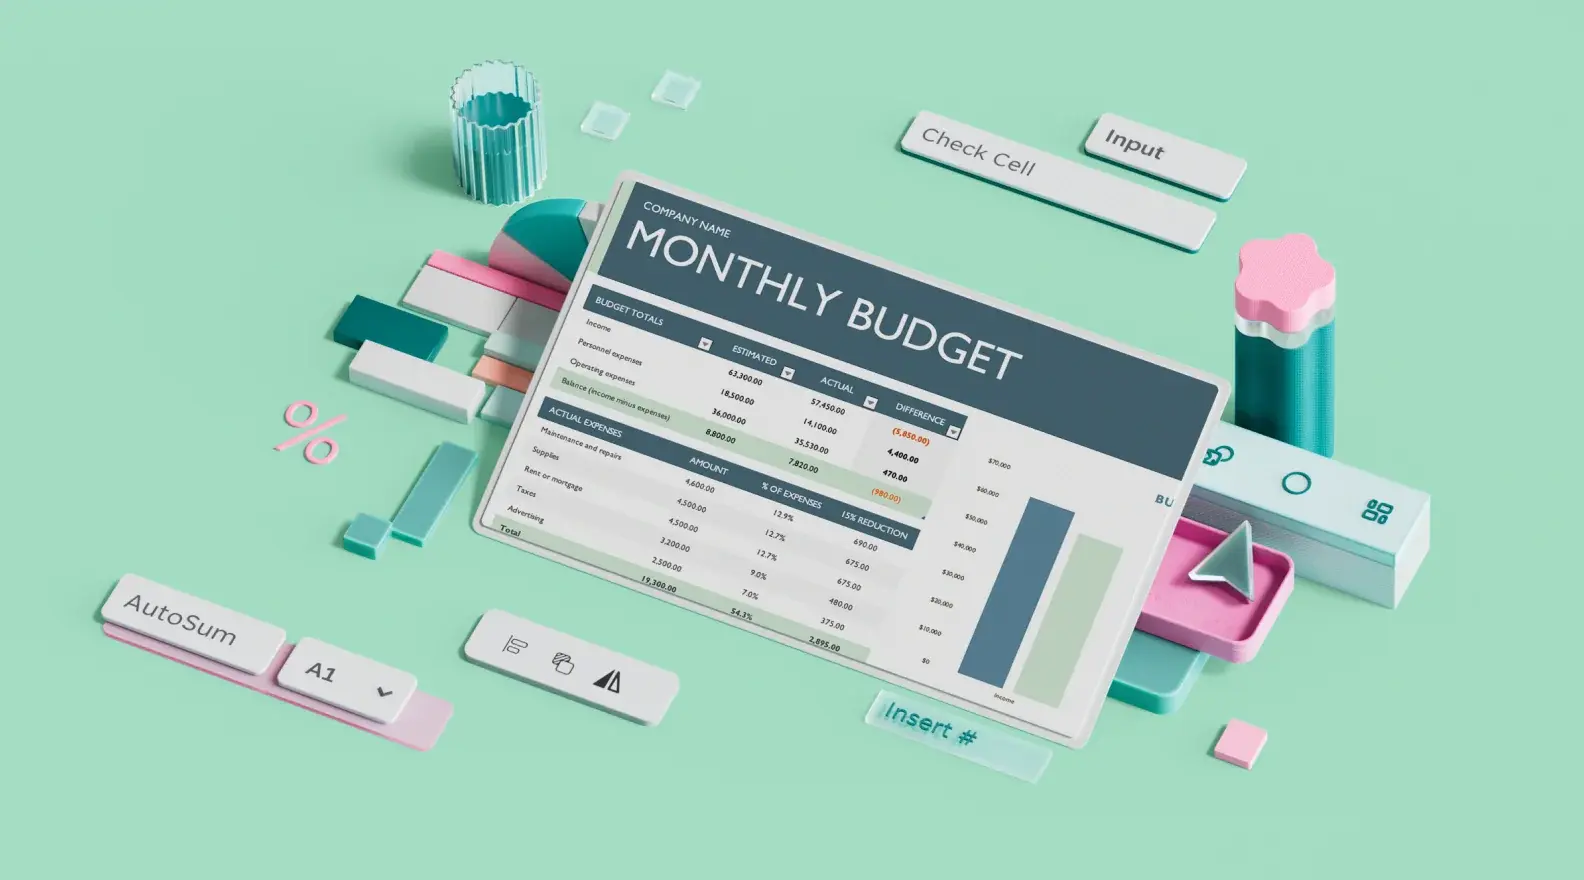 Modelo de orçamento de negócios mensal do Microsoft Excel cercado por elementos de design 3D